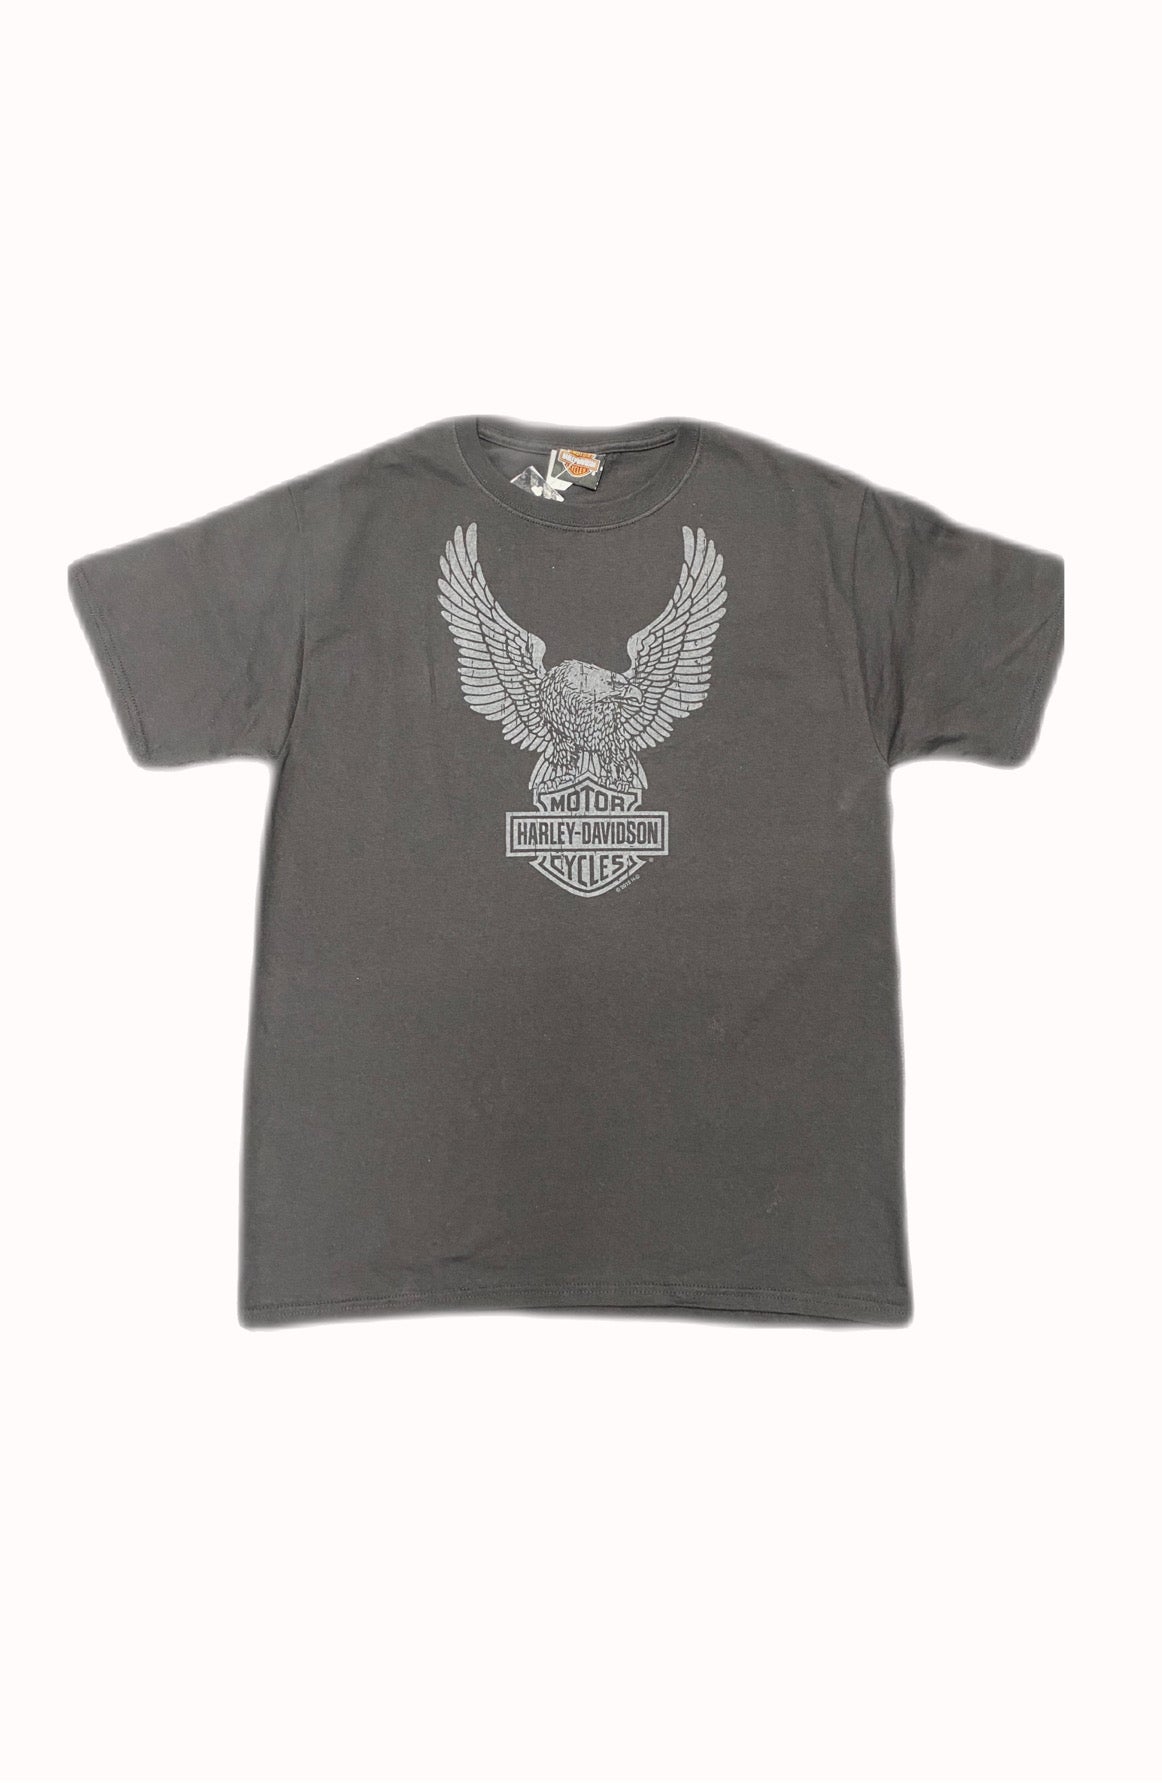 Harley Davidson Men's Upwing Dealer T-shirt